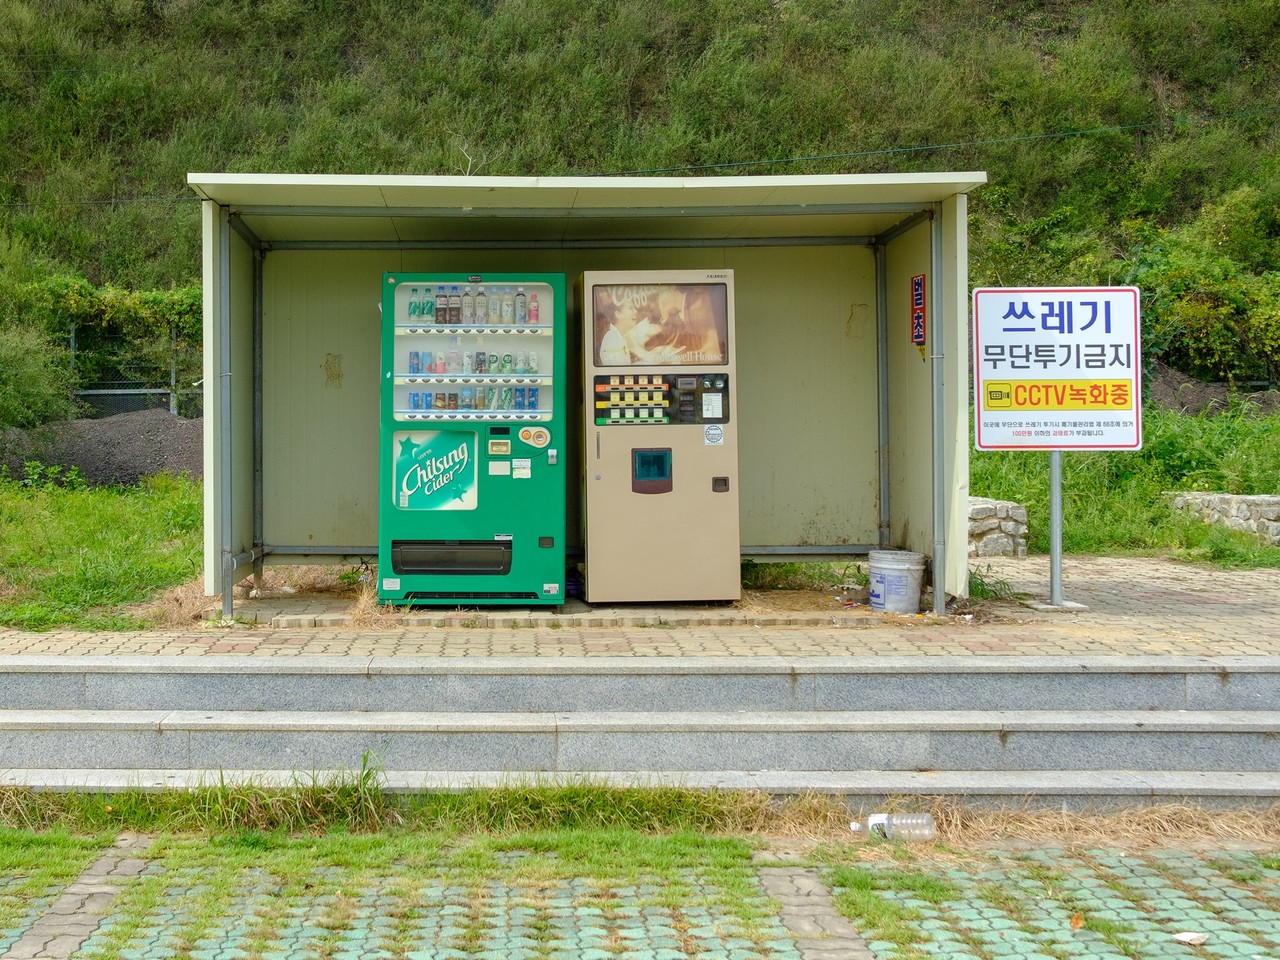 고속도로 졸음 쉼터에서 오랜만에 만난 커피 자판기가 반갑다. [사진=오상민 작가]